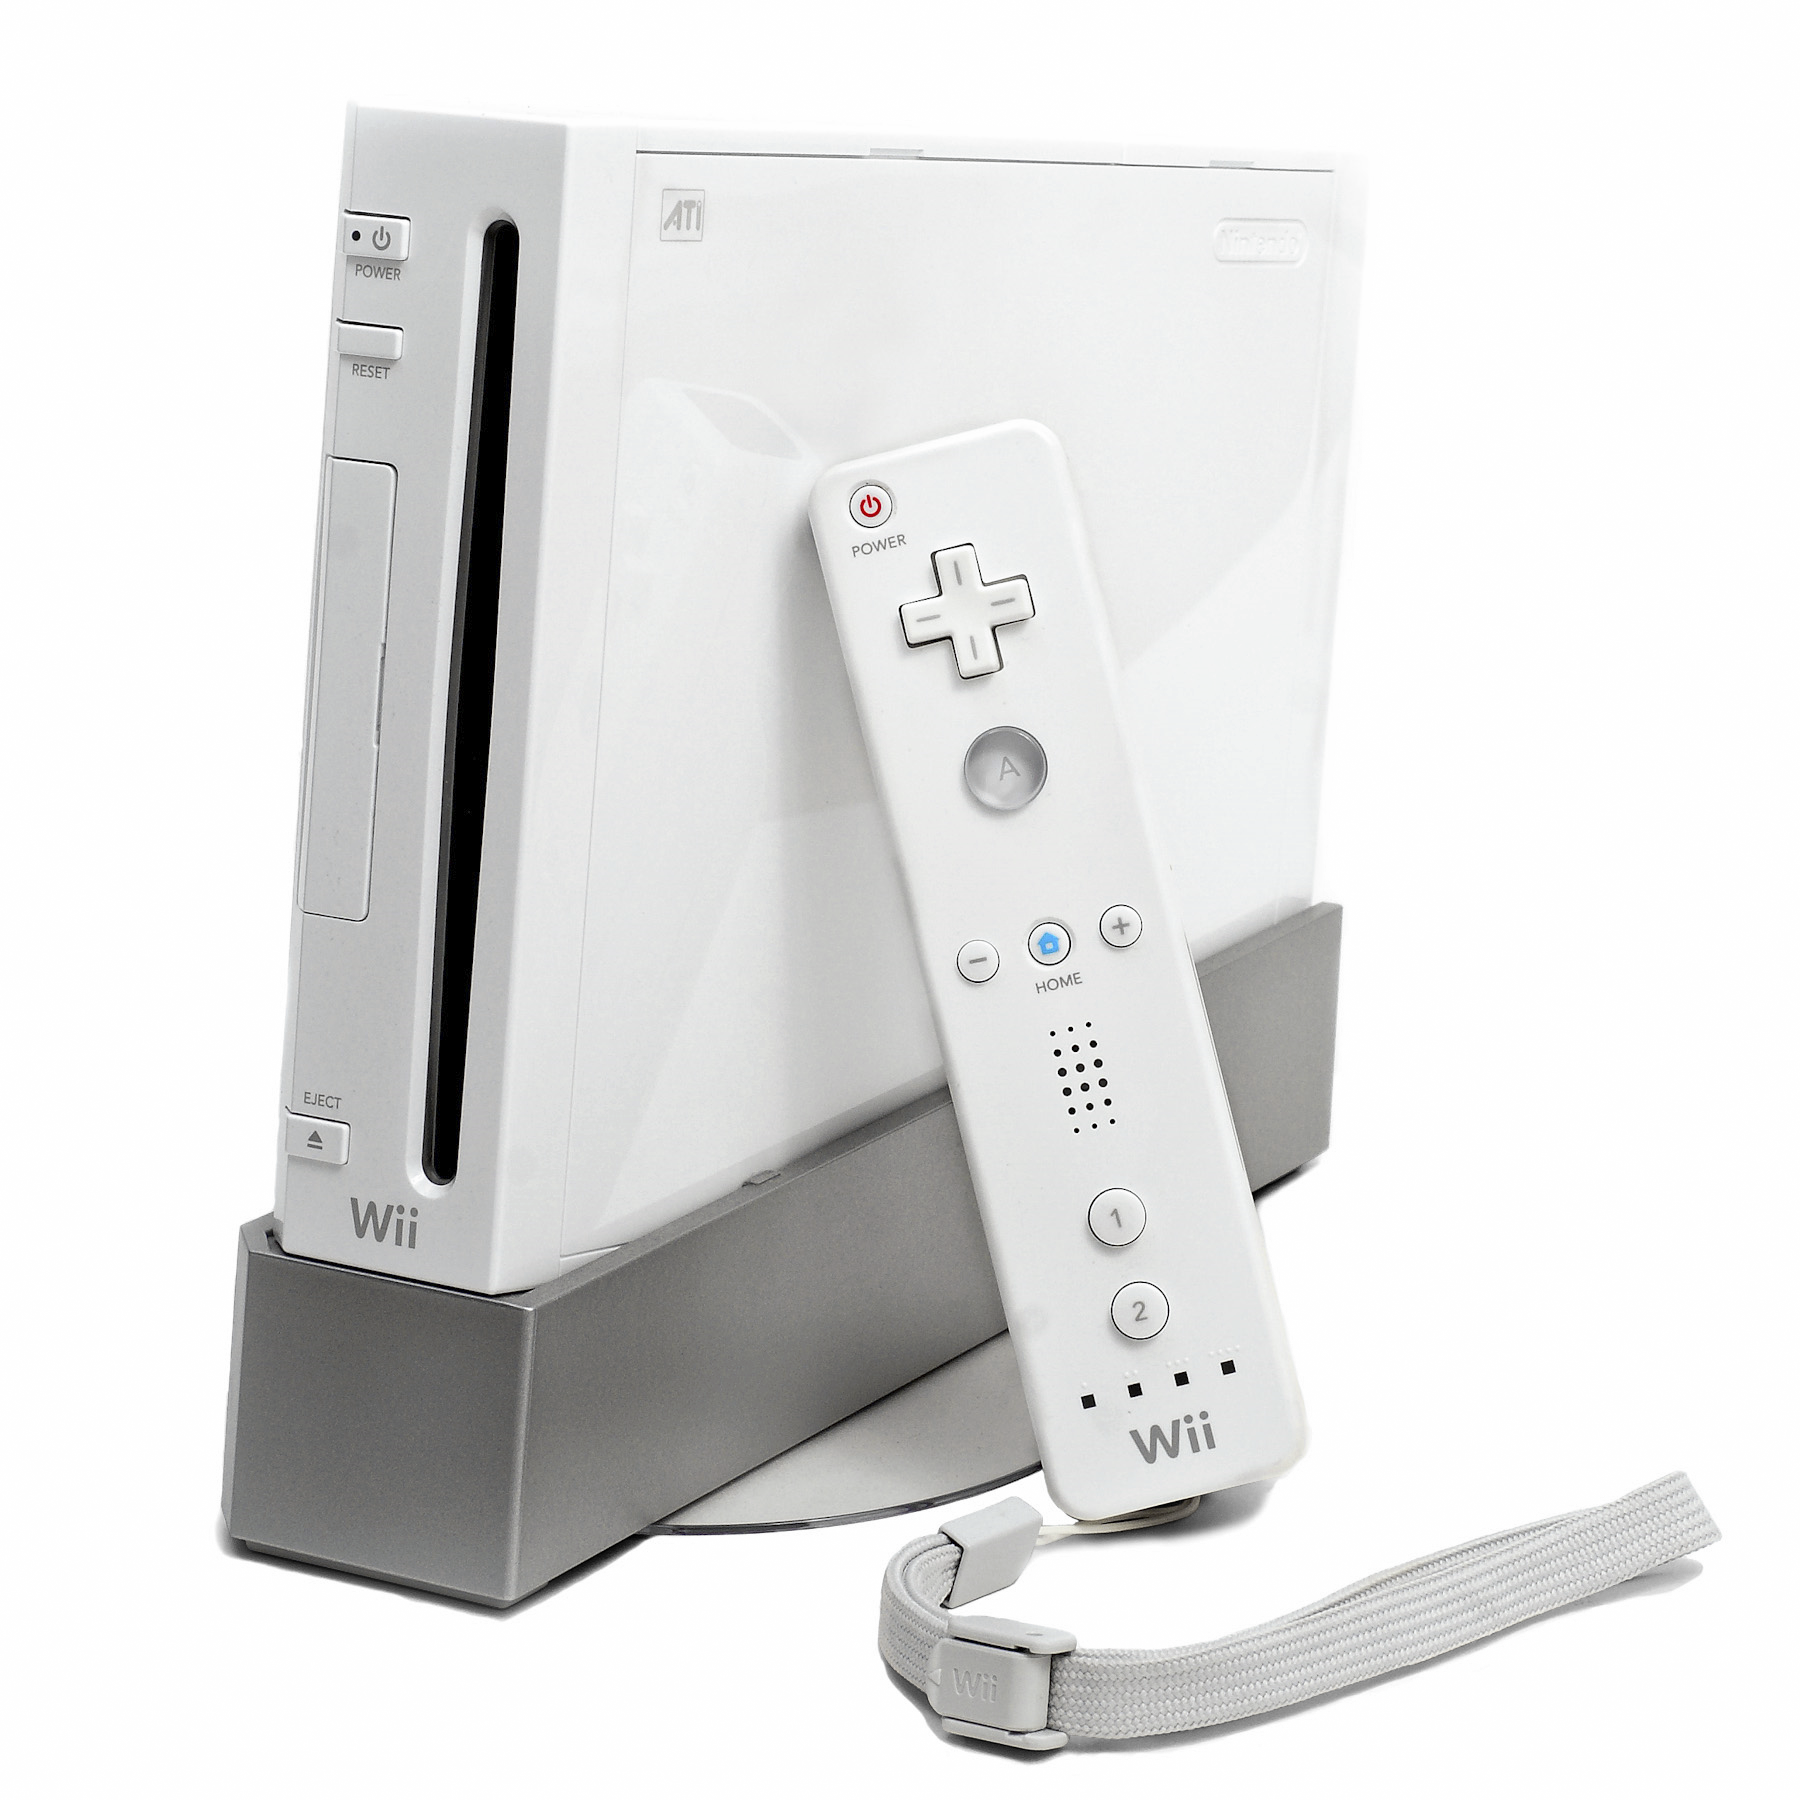 Die Nintendo Wii, viel beliebter als die Wii Mini